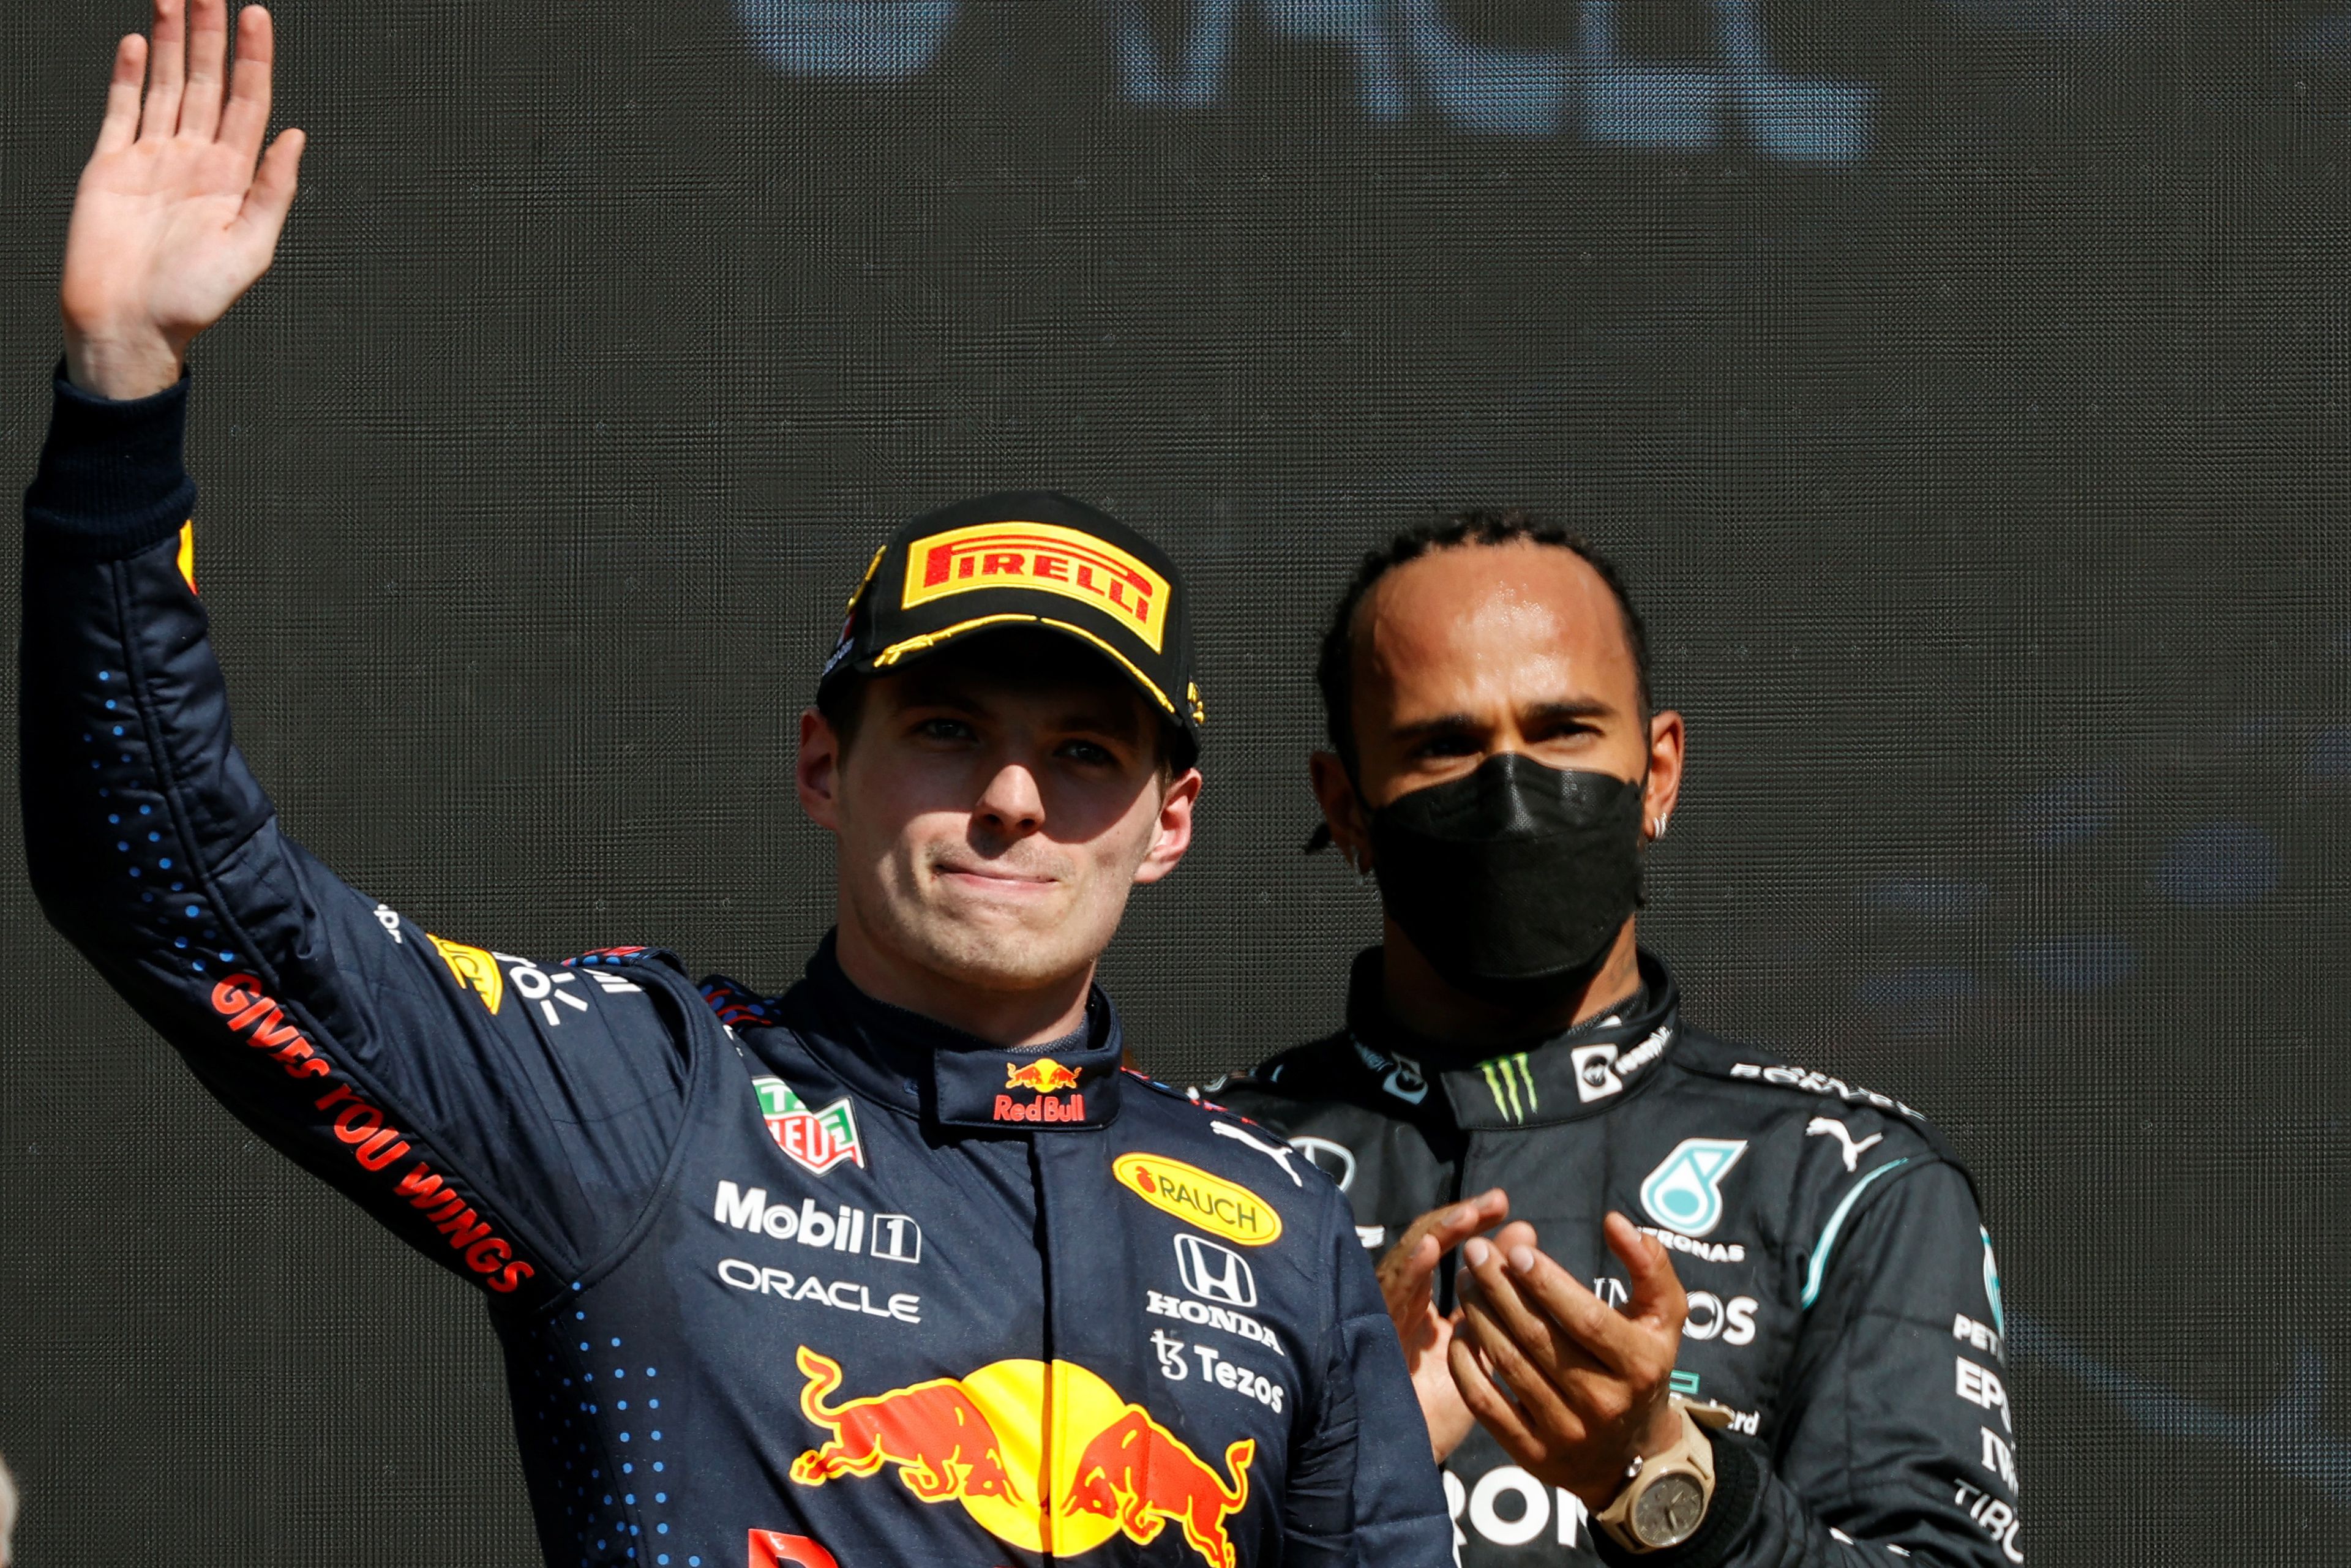 Ismét szócsata alakult ki Max Verstappen és Lewis Hamilton között. / Fotó: EPA/Jose Mendez